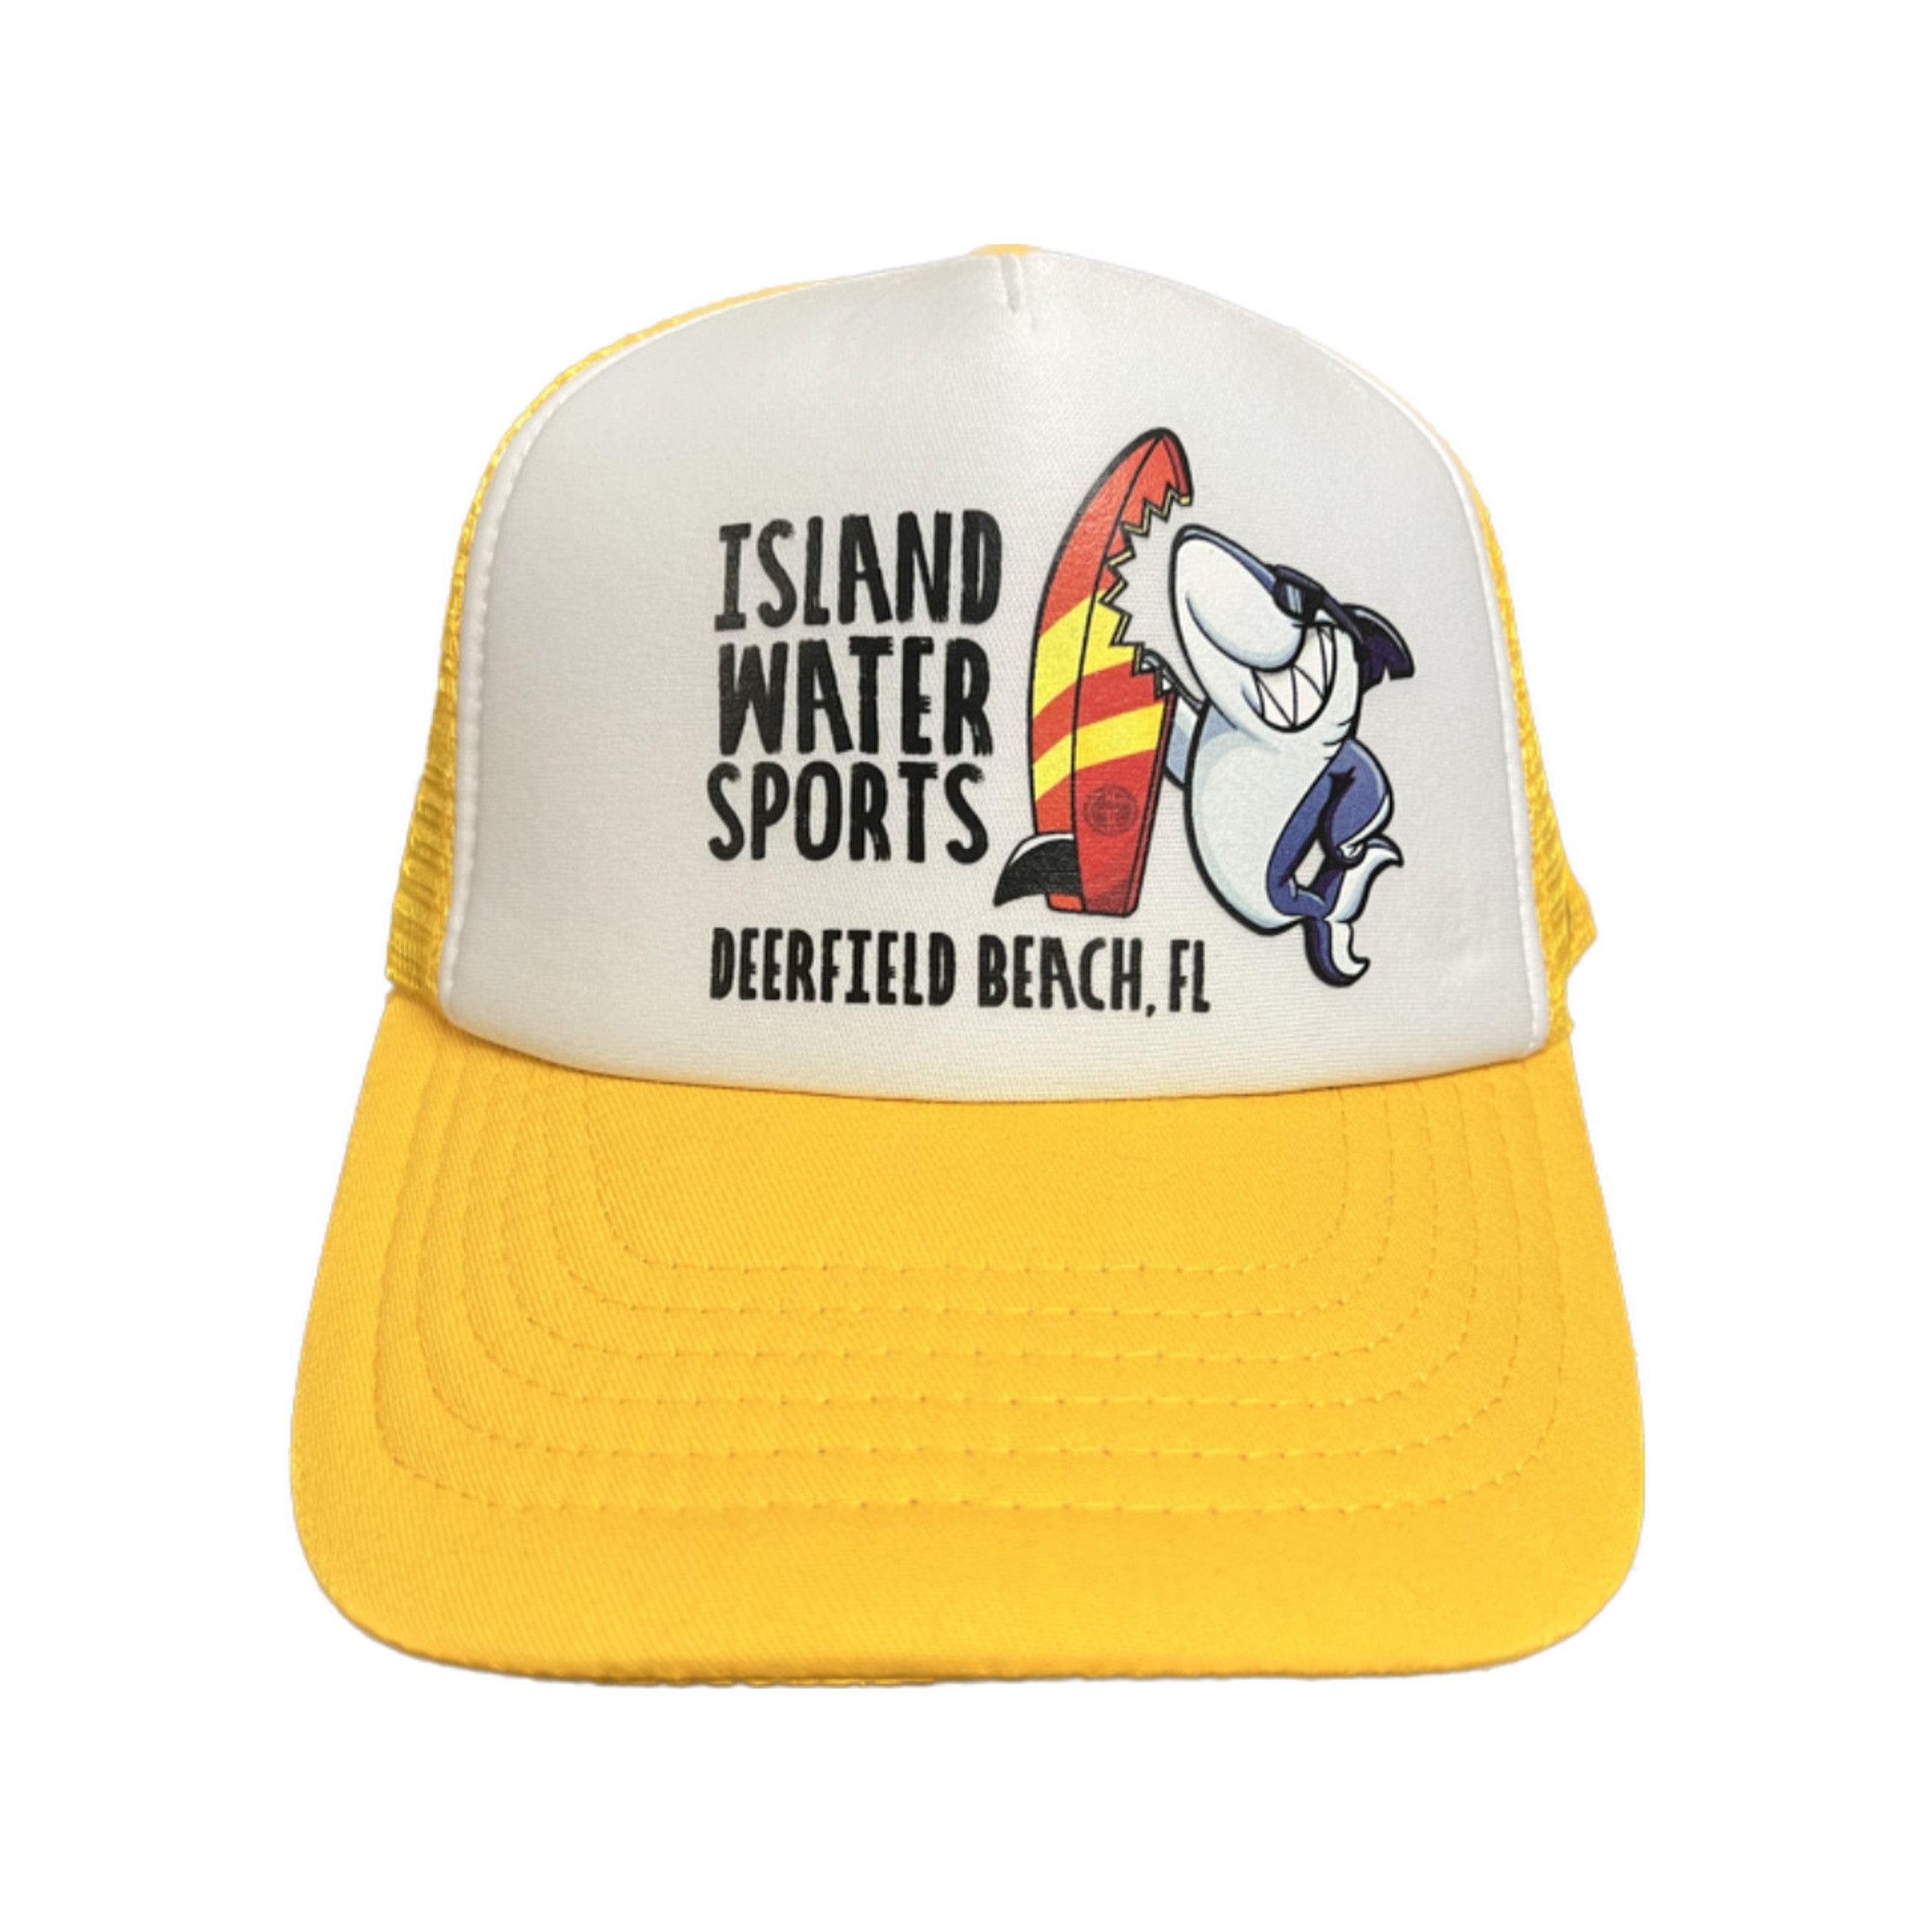 Grom Squad IWS Board Meeting Trucker Hat Yellow Super